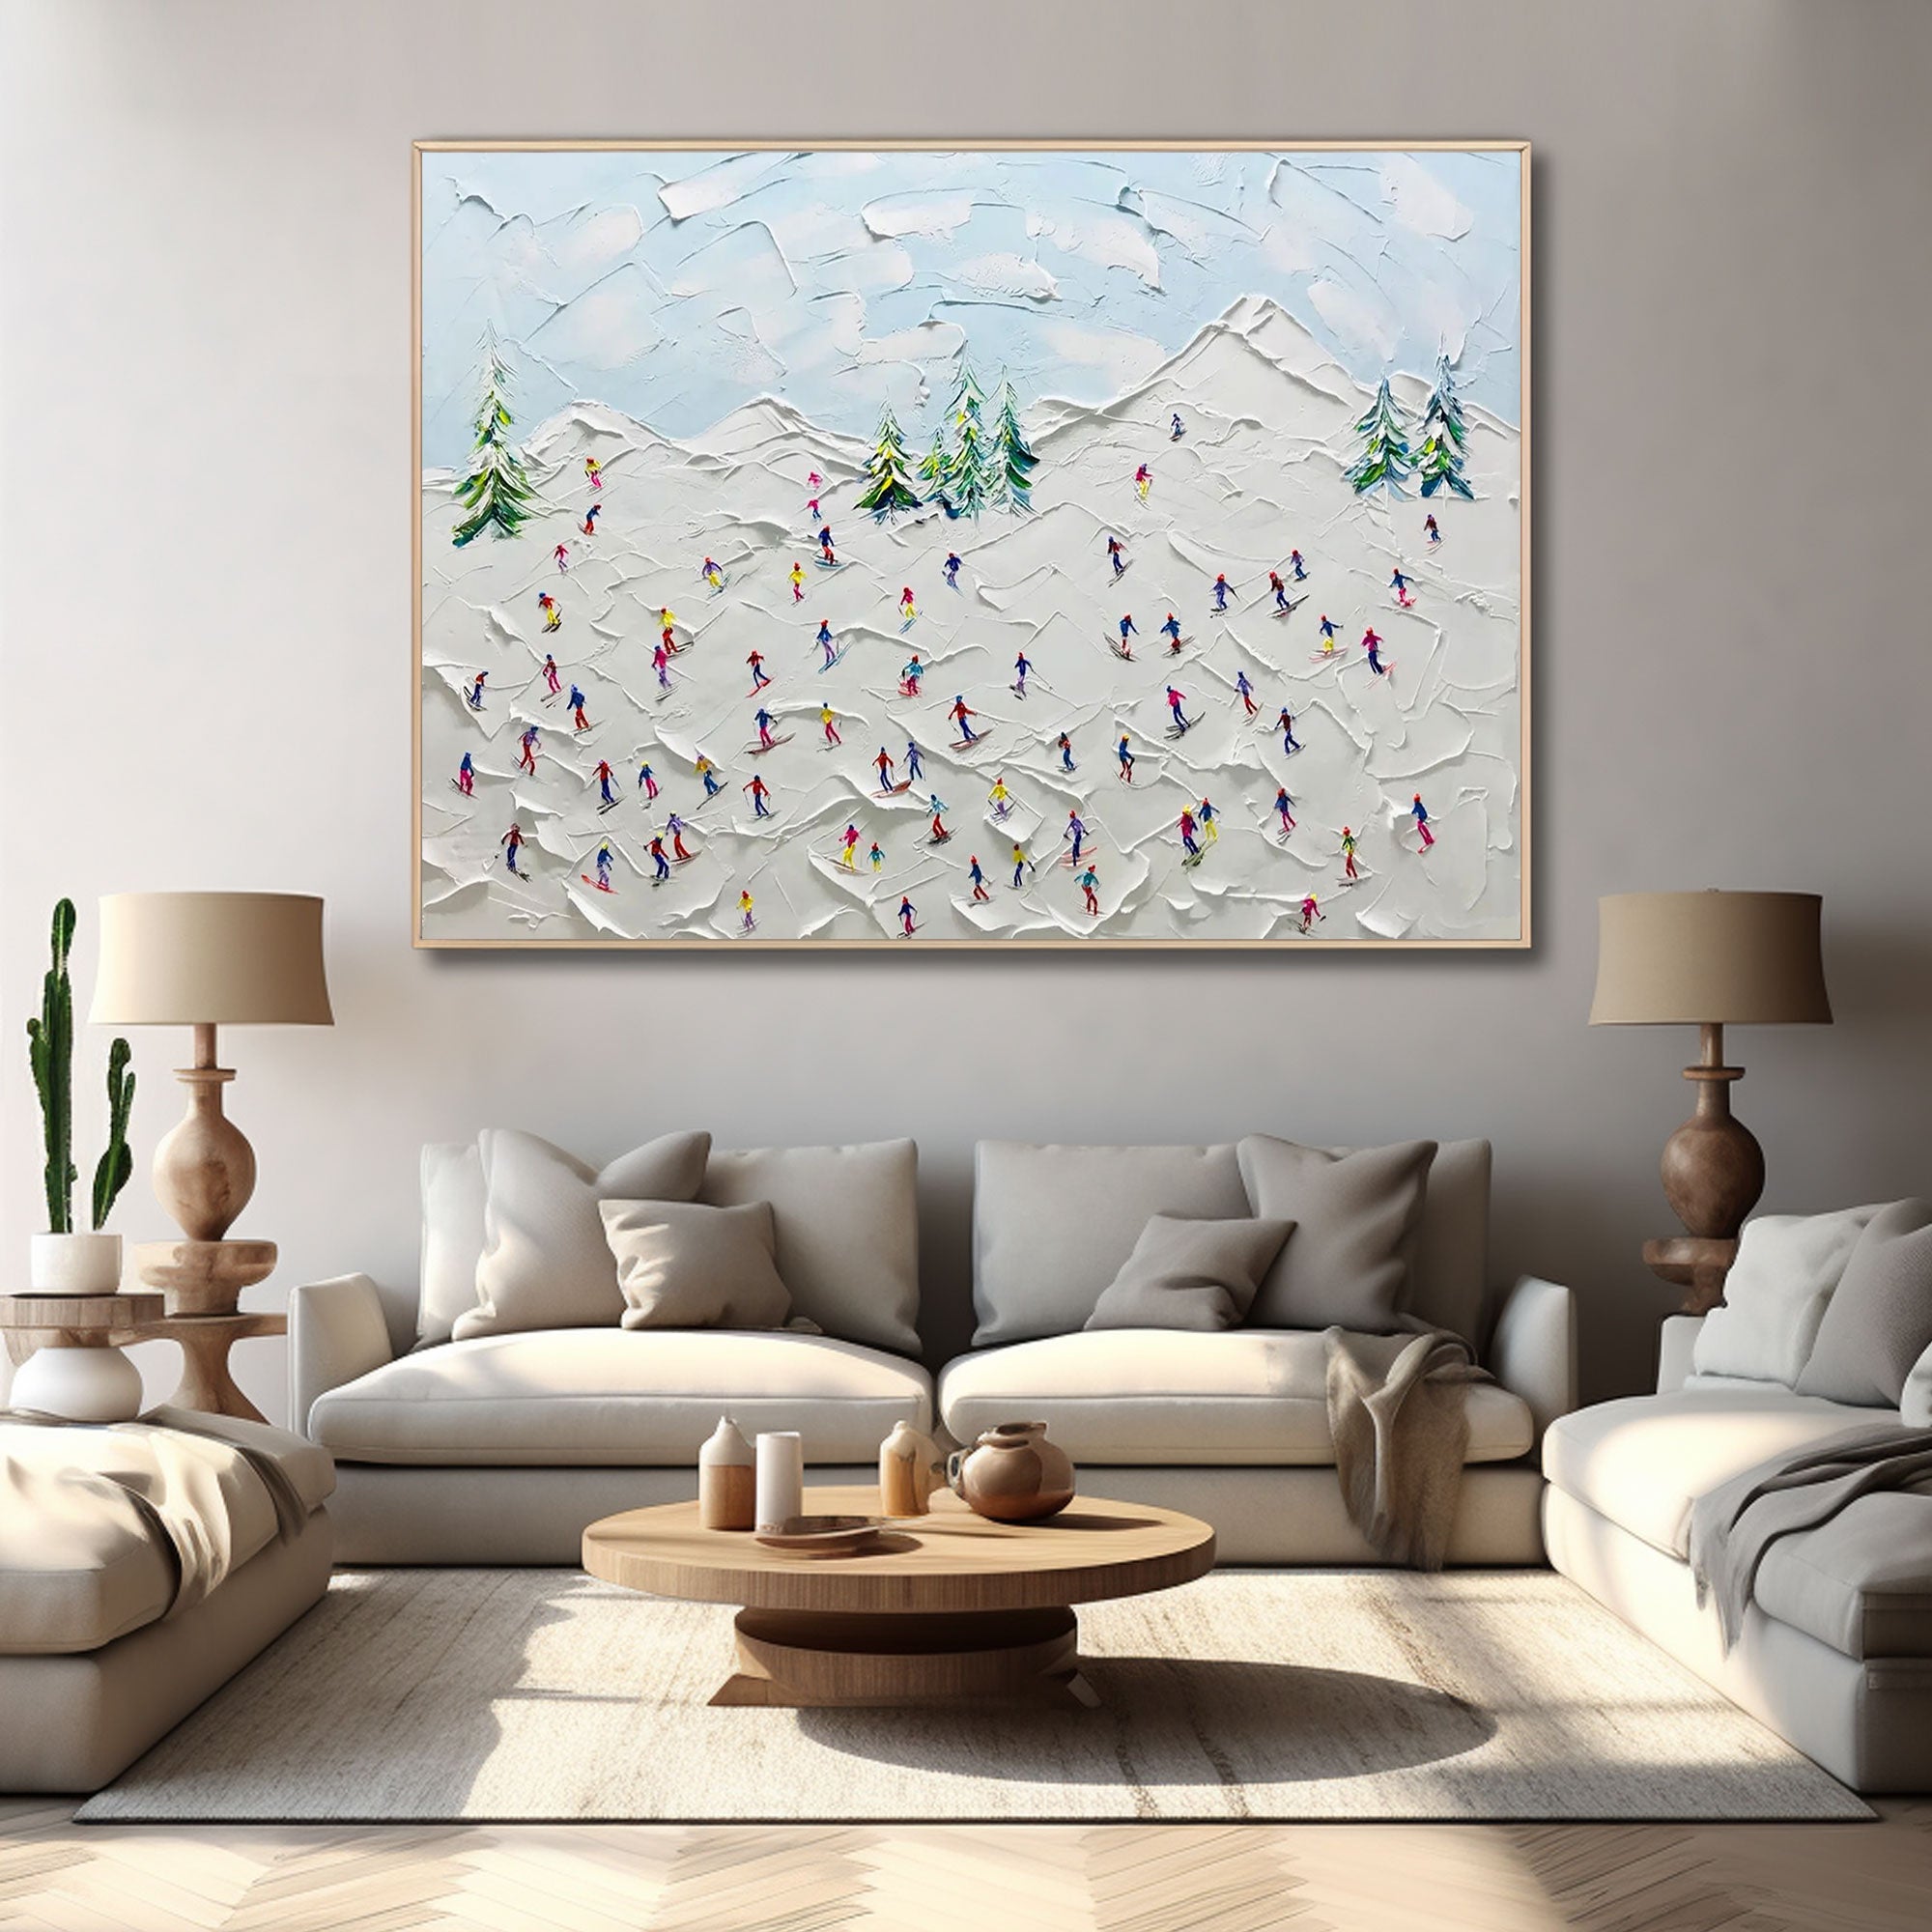 Art mural texturé 3D Peinture abstraite blanche « La joie de l’hiver » 